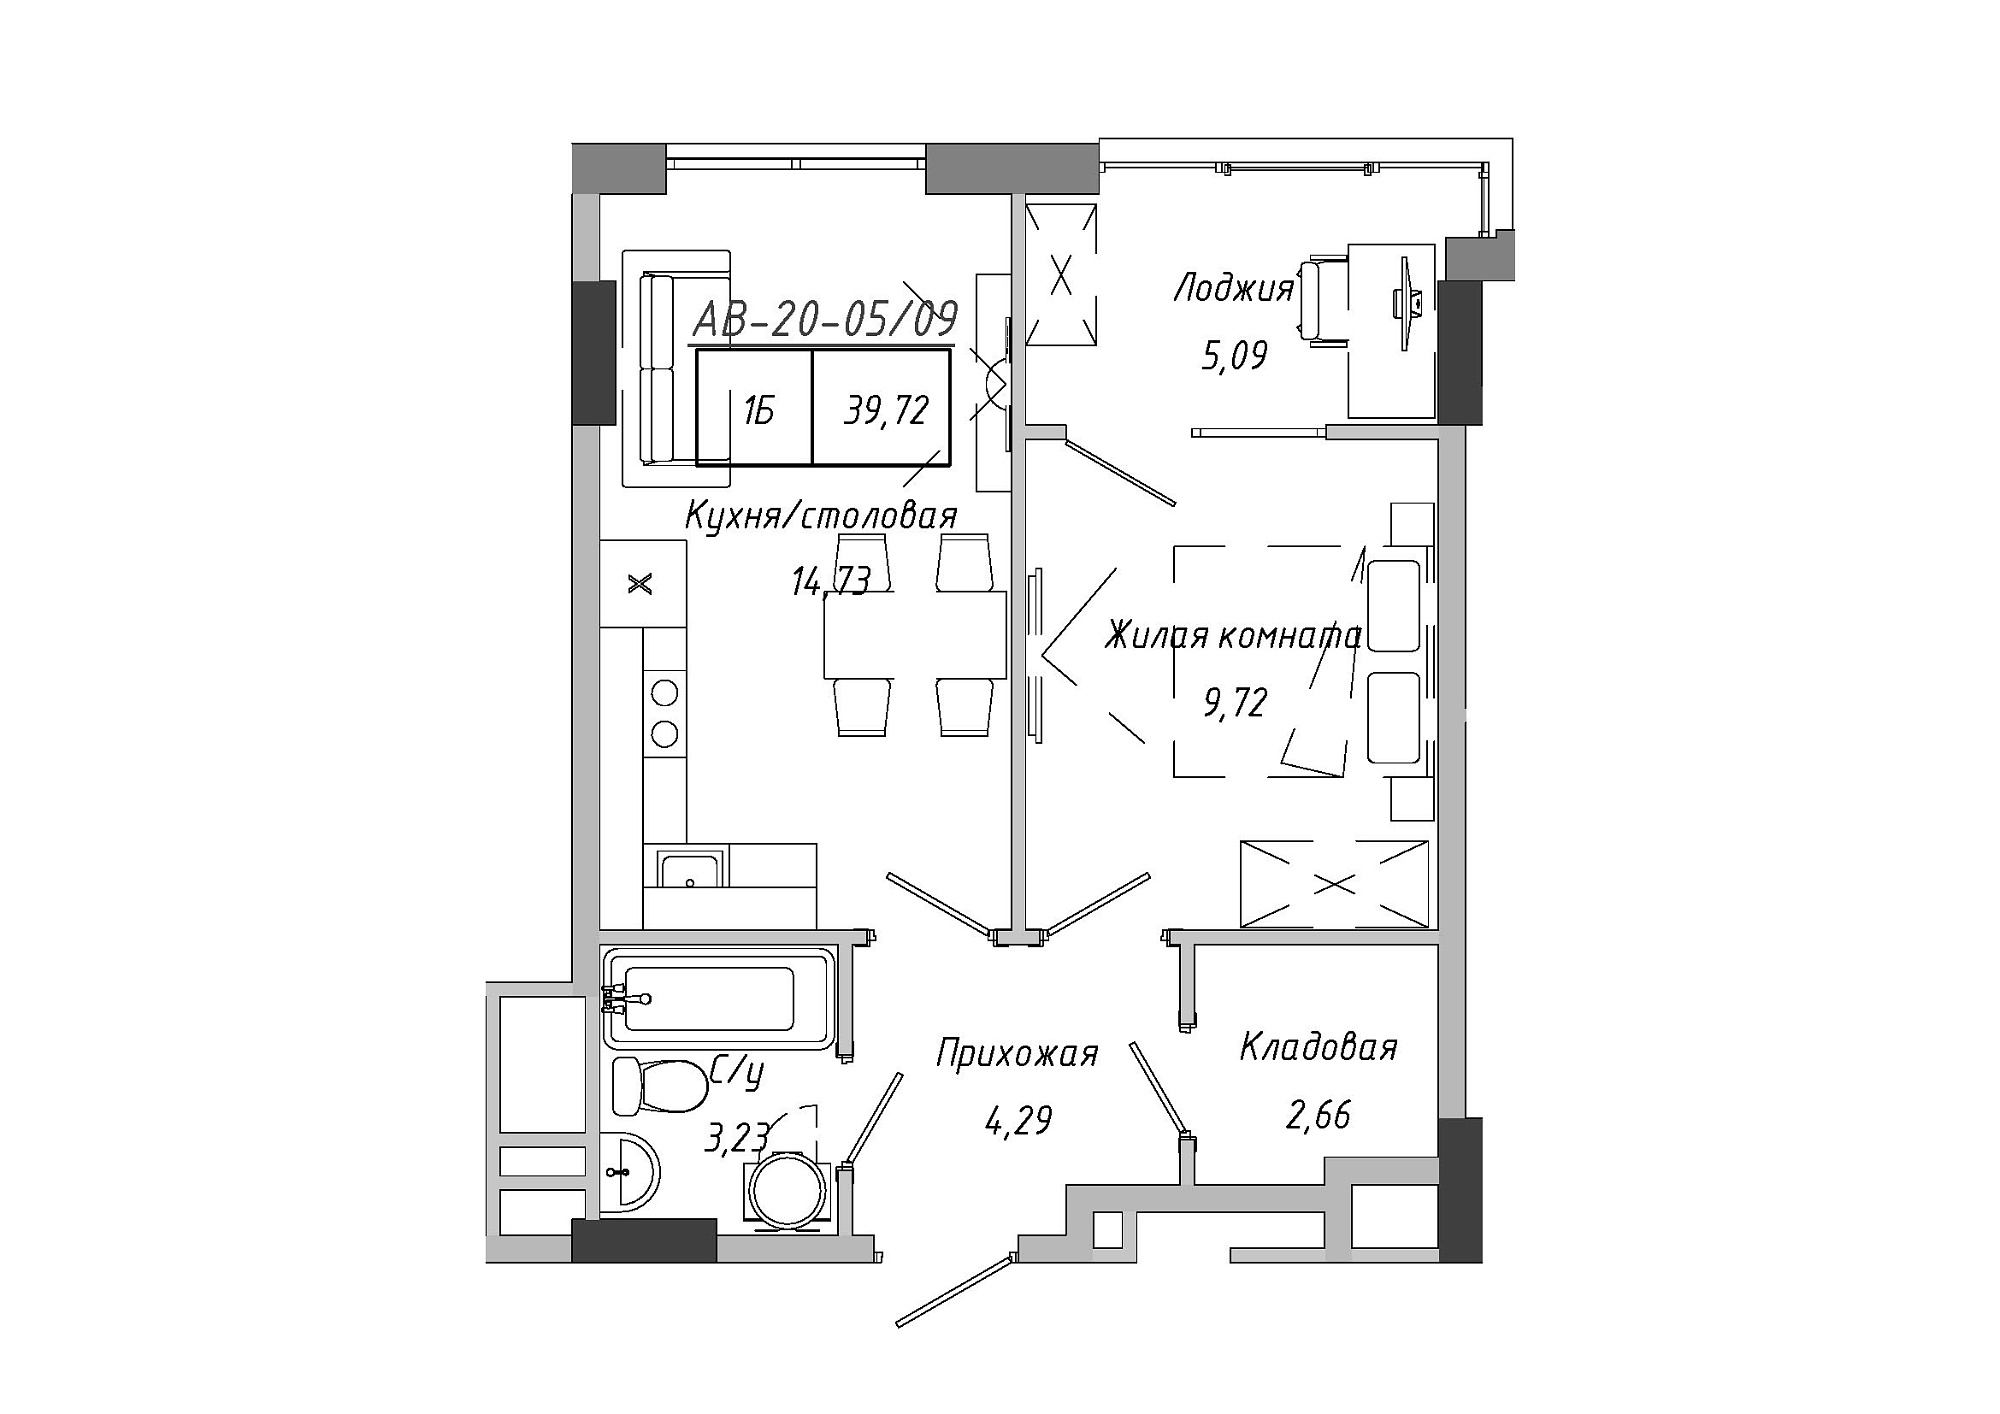 Планировка 1-к квартира площей 37.59м2, AB-20-05/00009.